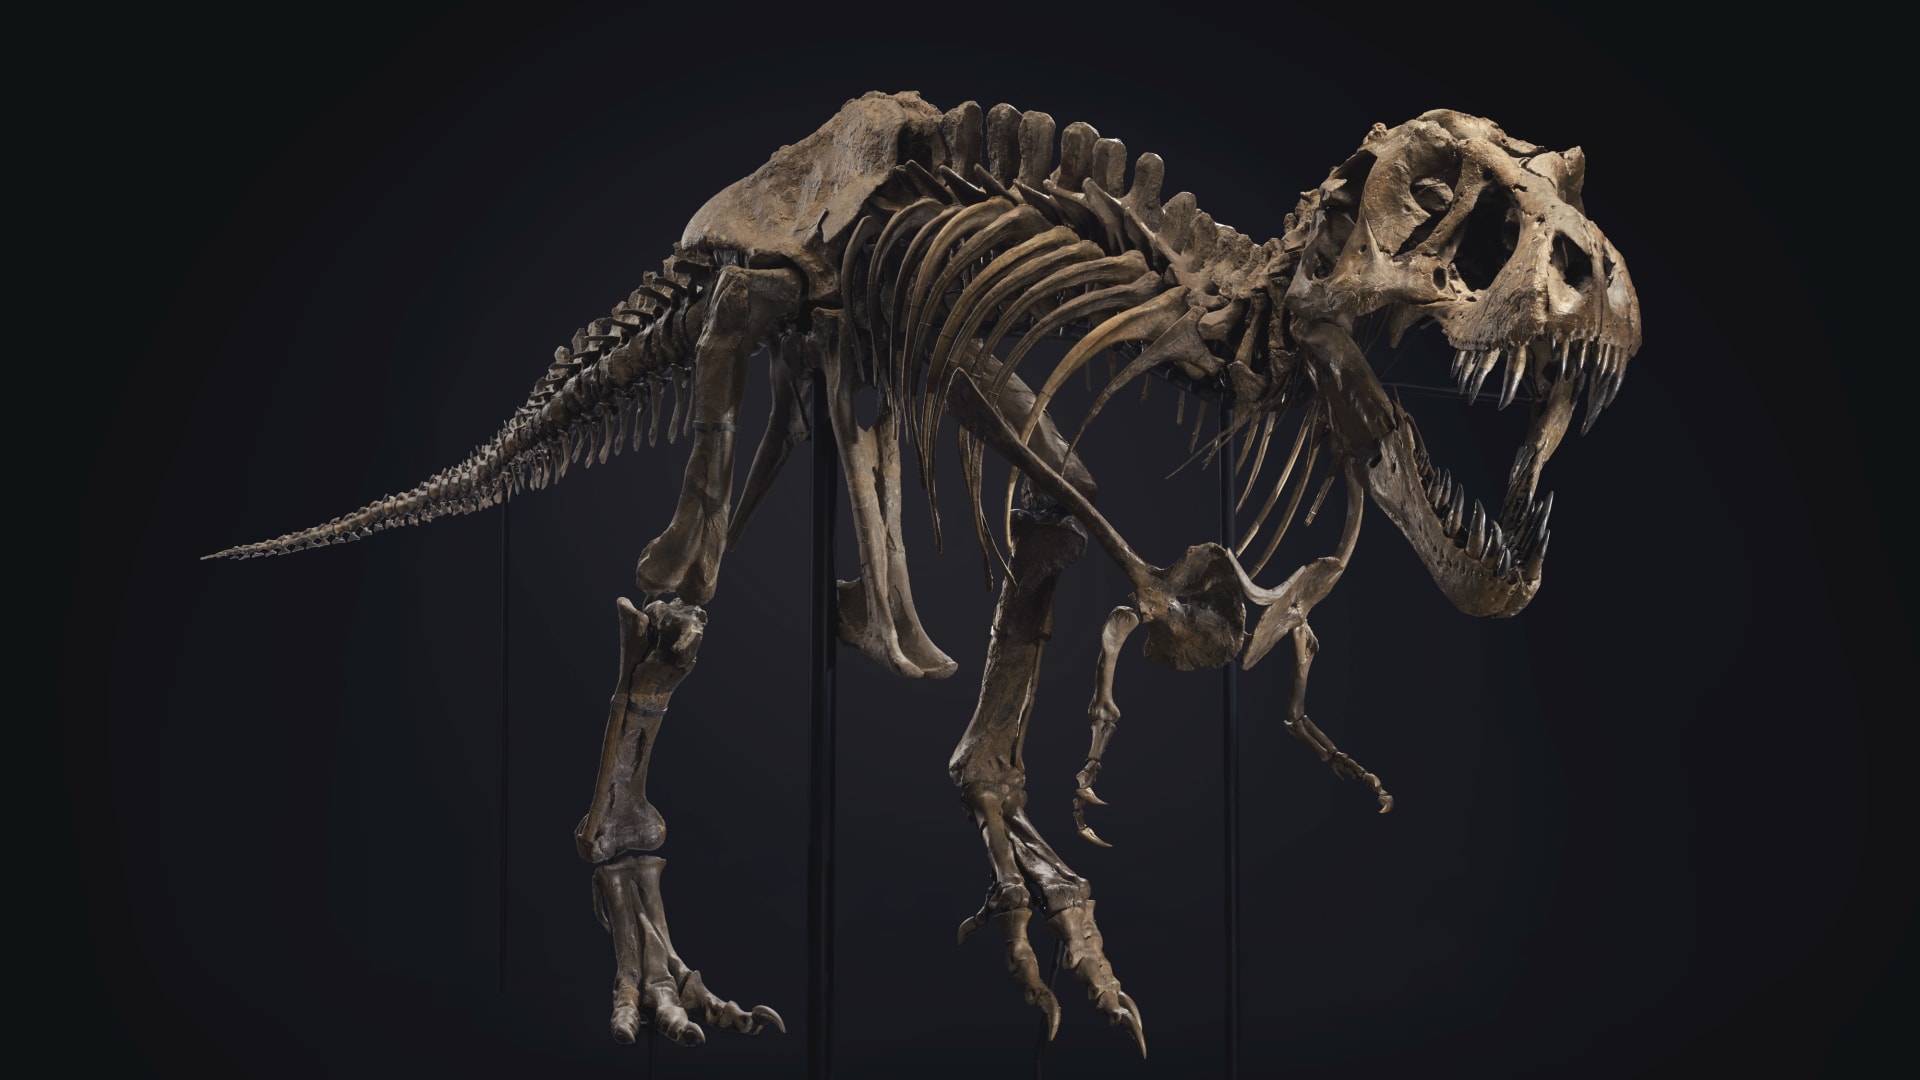 سيكون للديناصور الشهير "ستان" منزل جديد بأبوظبي مع إطلاق مشروع إنشاء متحف التاريخ الطبيعي